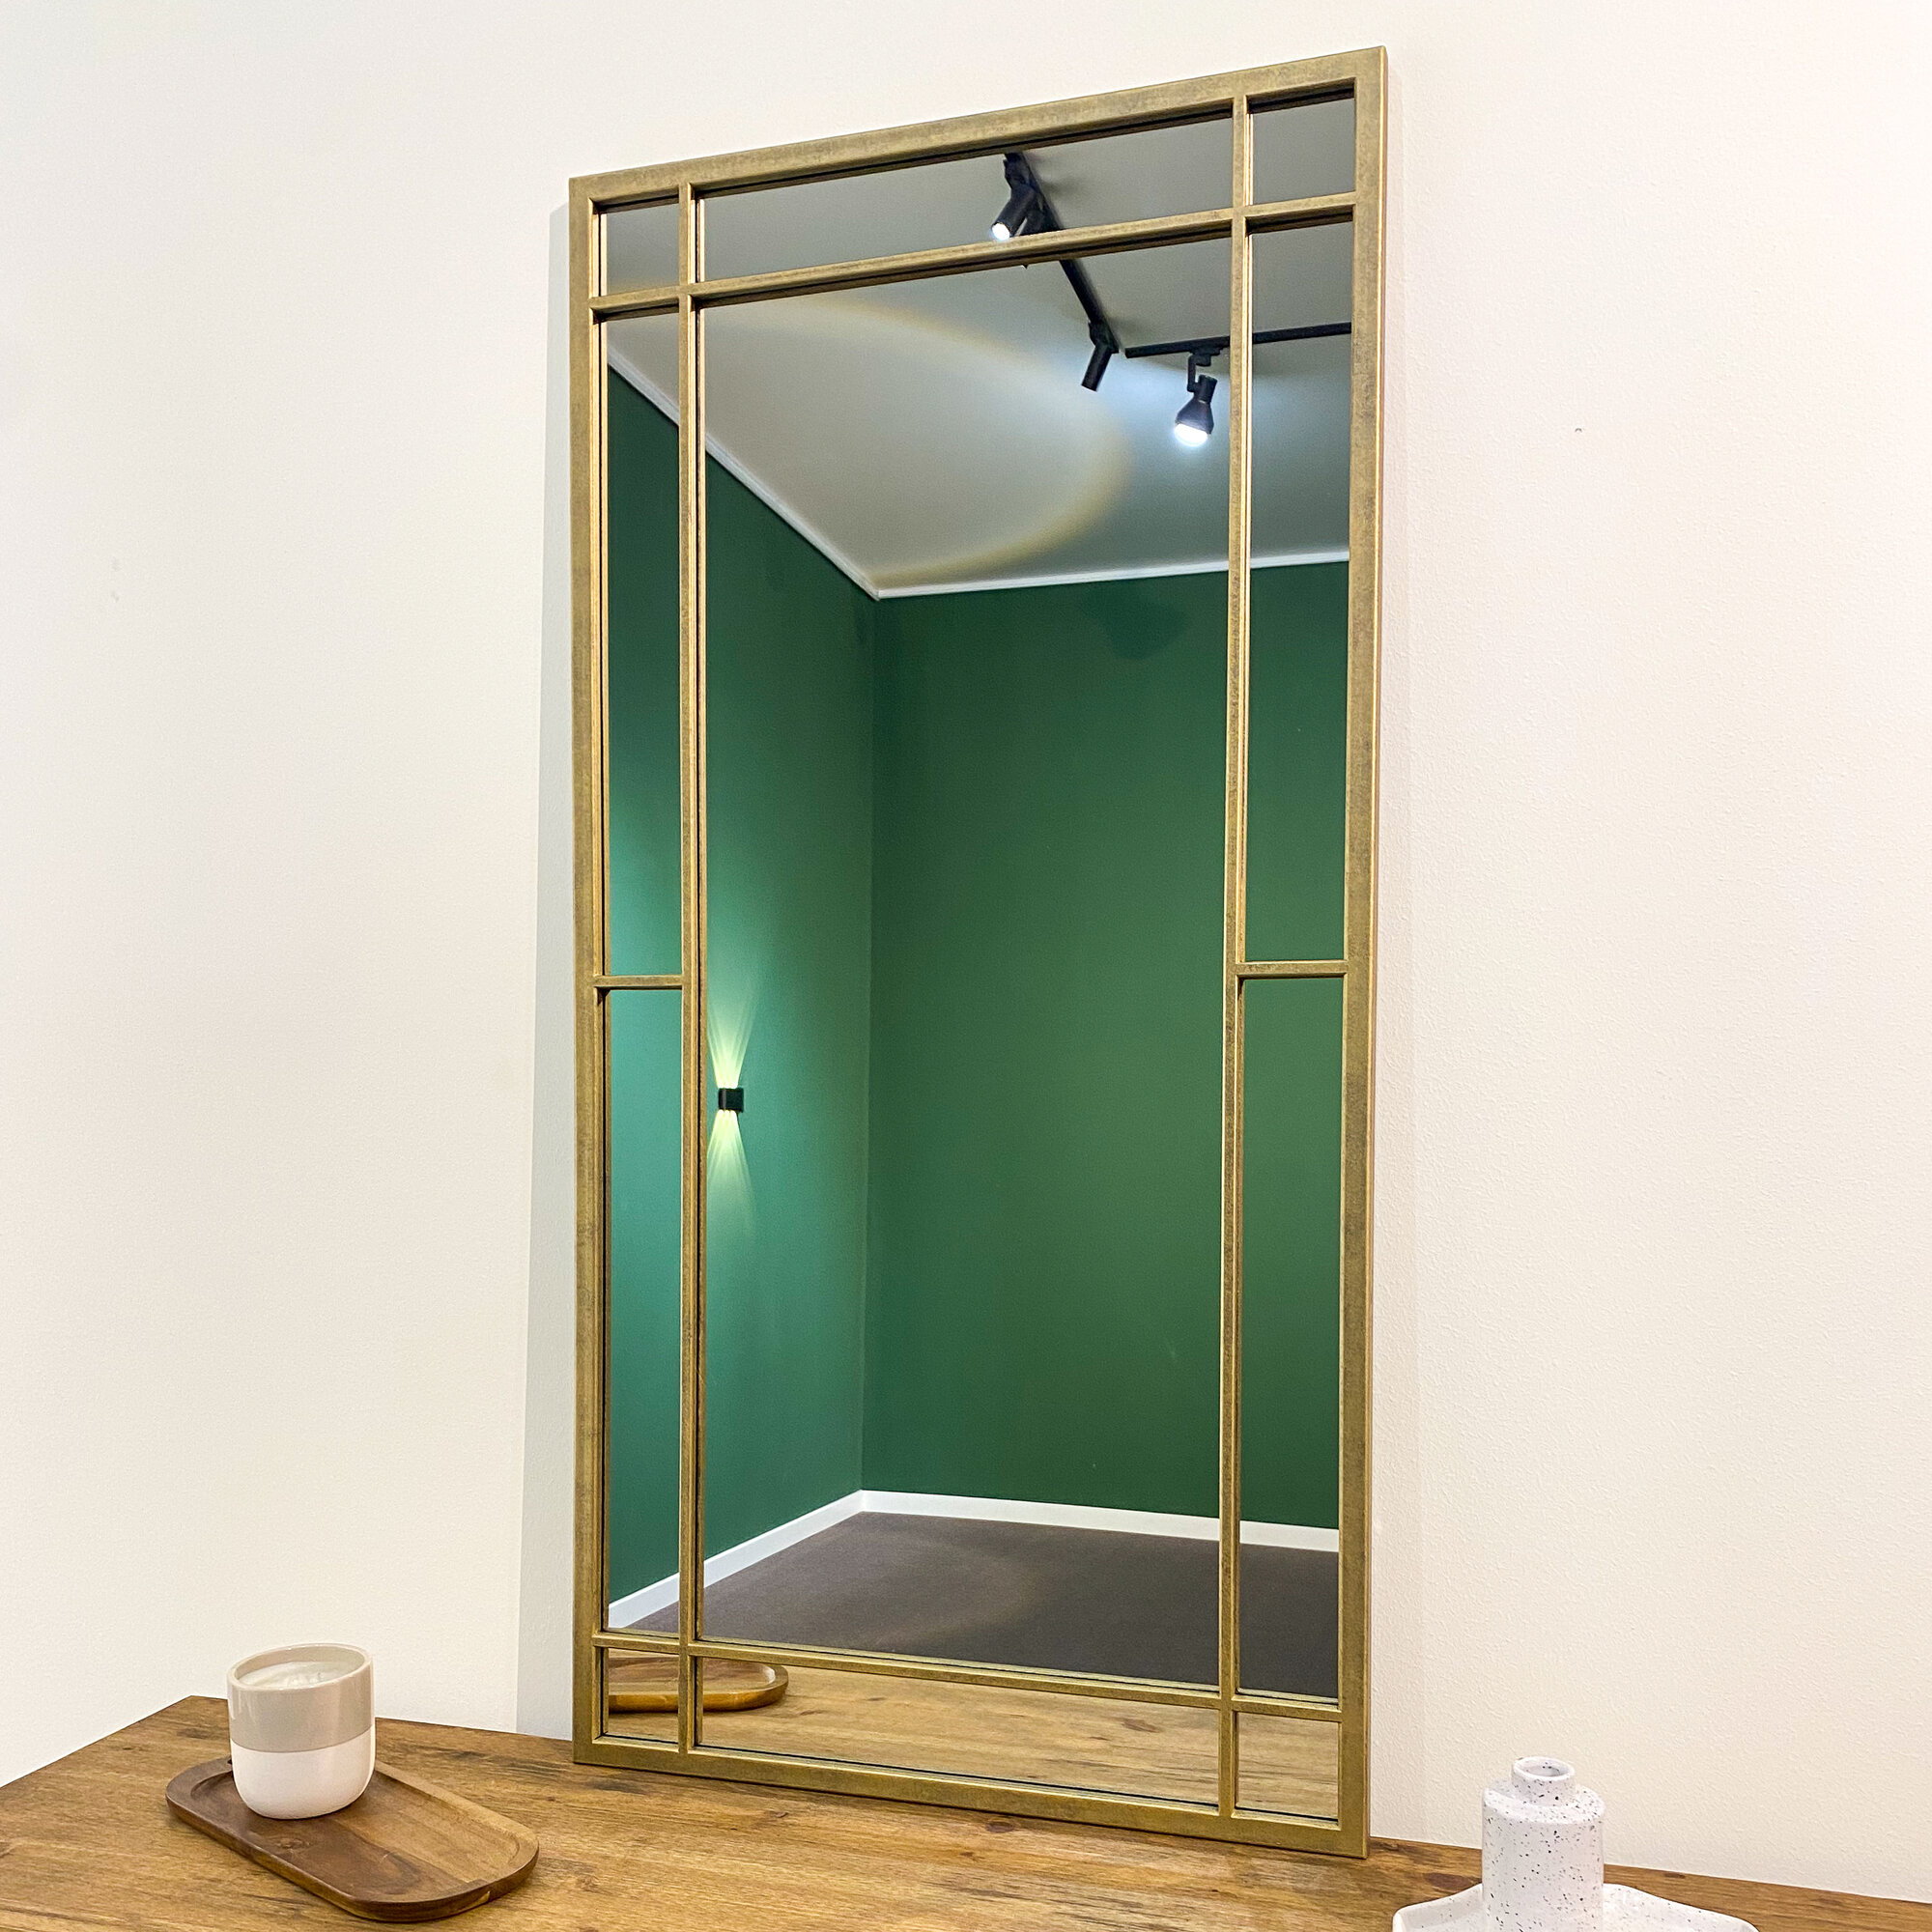 Зеркало настенное в прихожую KOVKA PROJECT в раме цвета "винтажное золото", размеры зеркала: 120см*60см